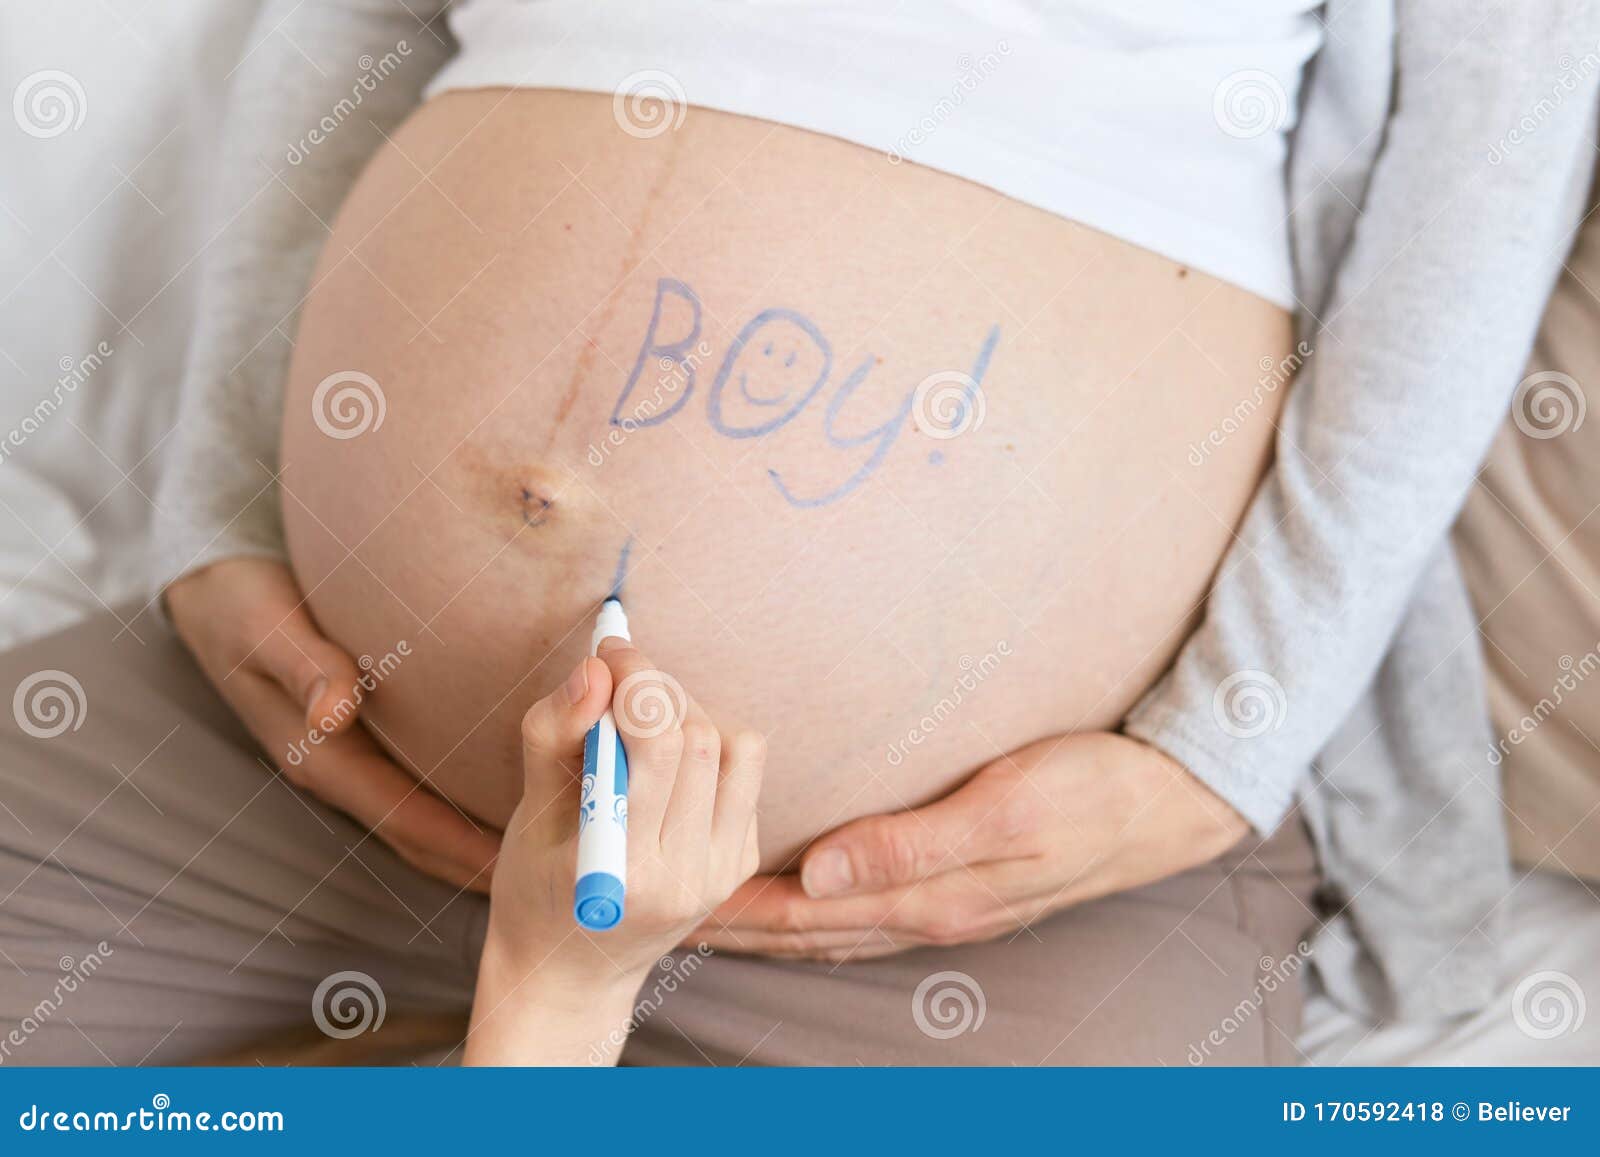 baby boy belly shape in pregnancy